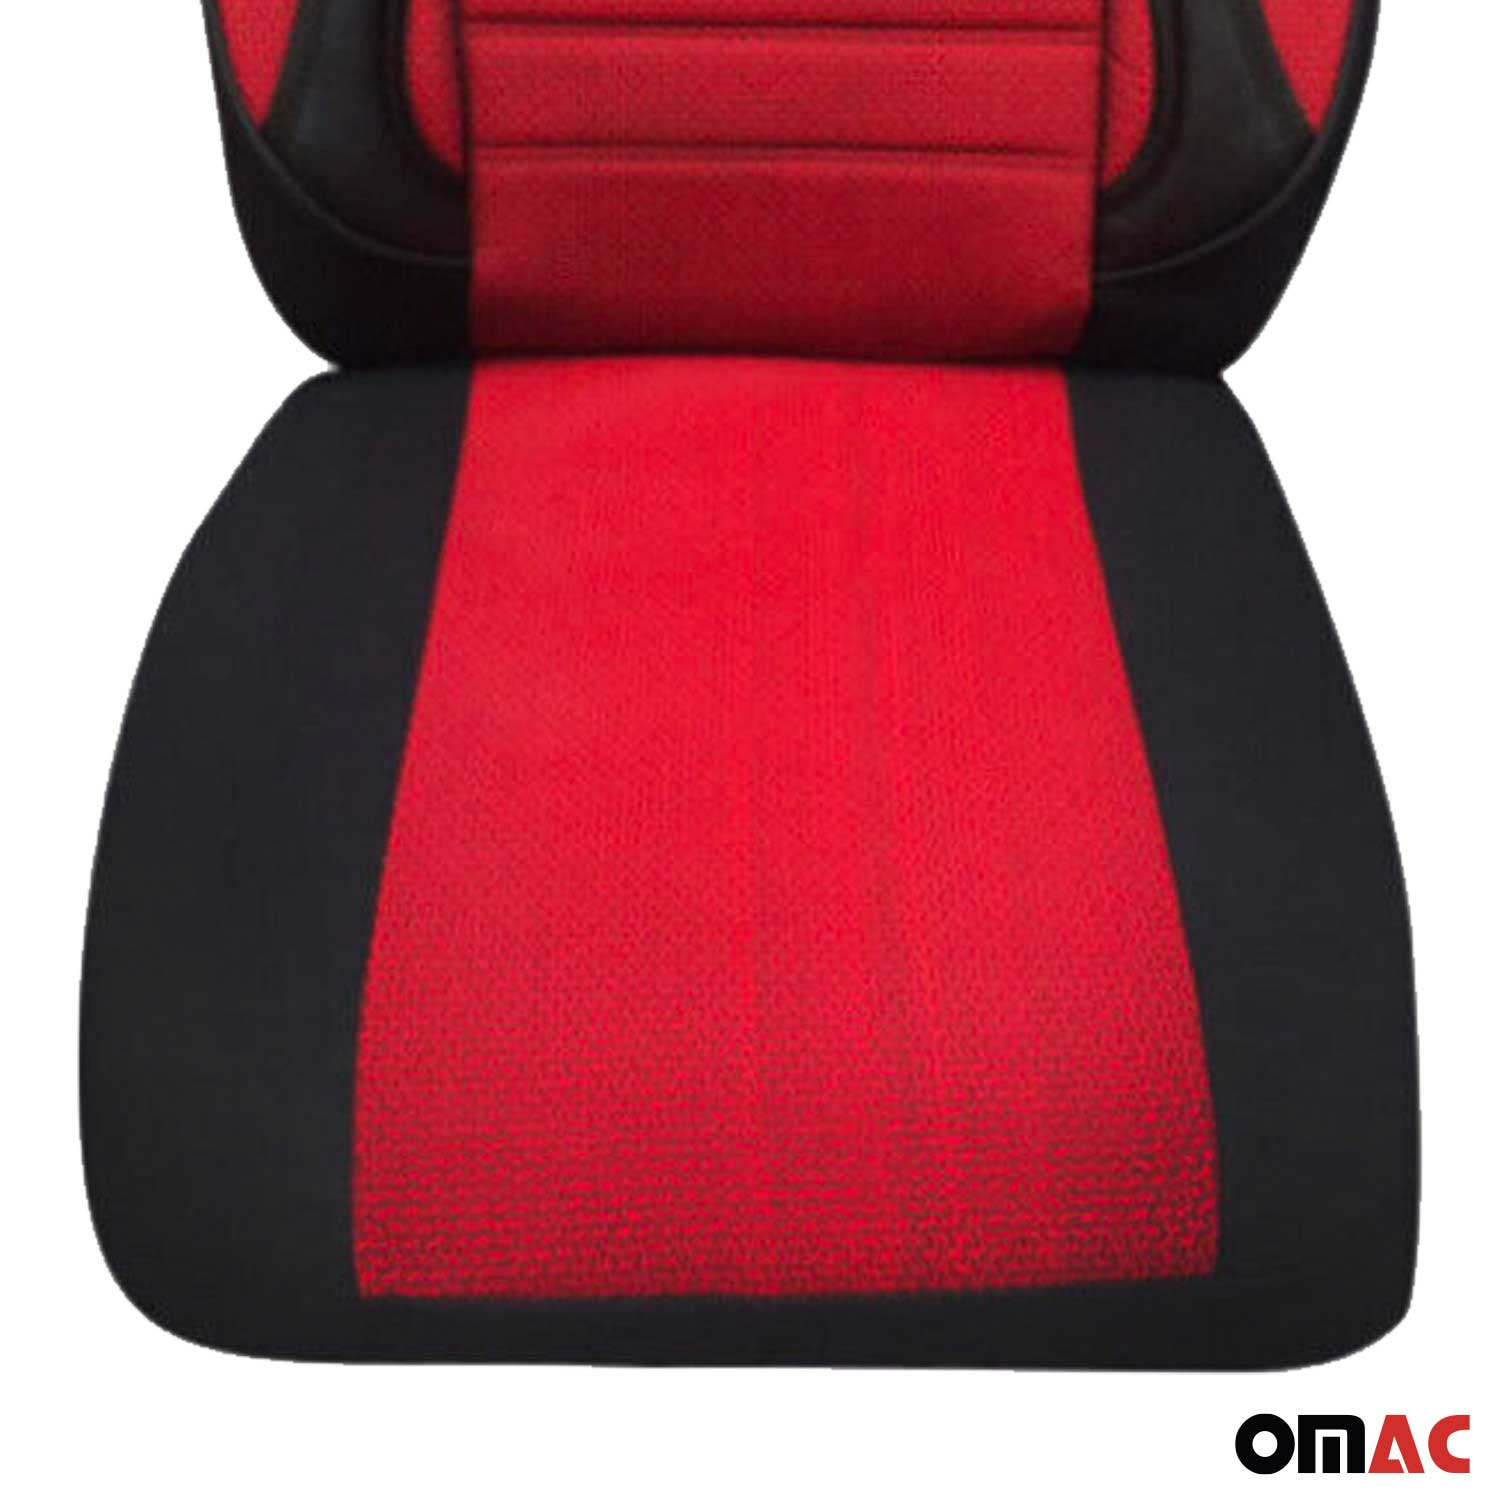 Für Fiat Sedici Stilo Schonbezüge Sitzbezug Schwarz Rot Vorne Satz 1+1 Auto